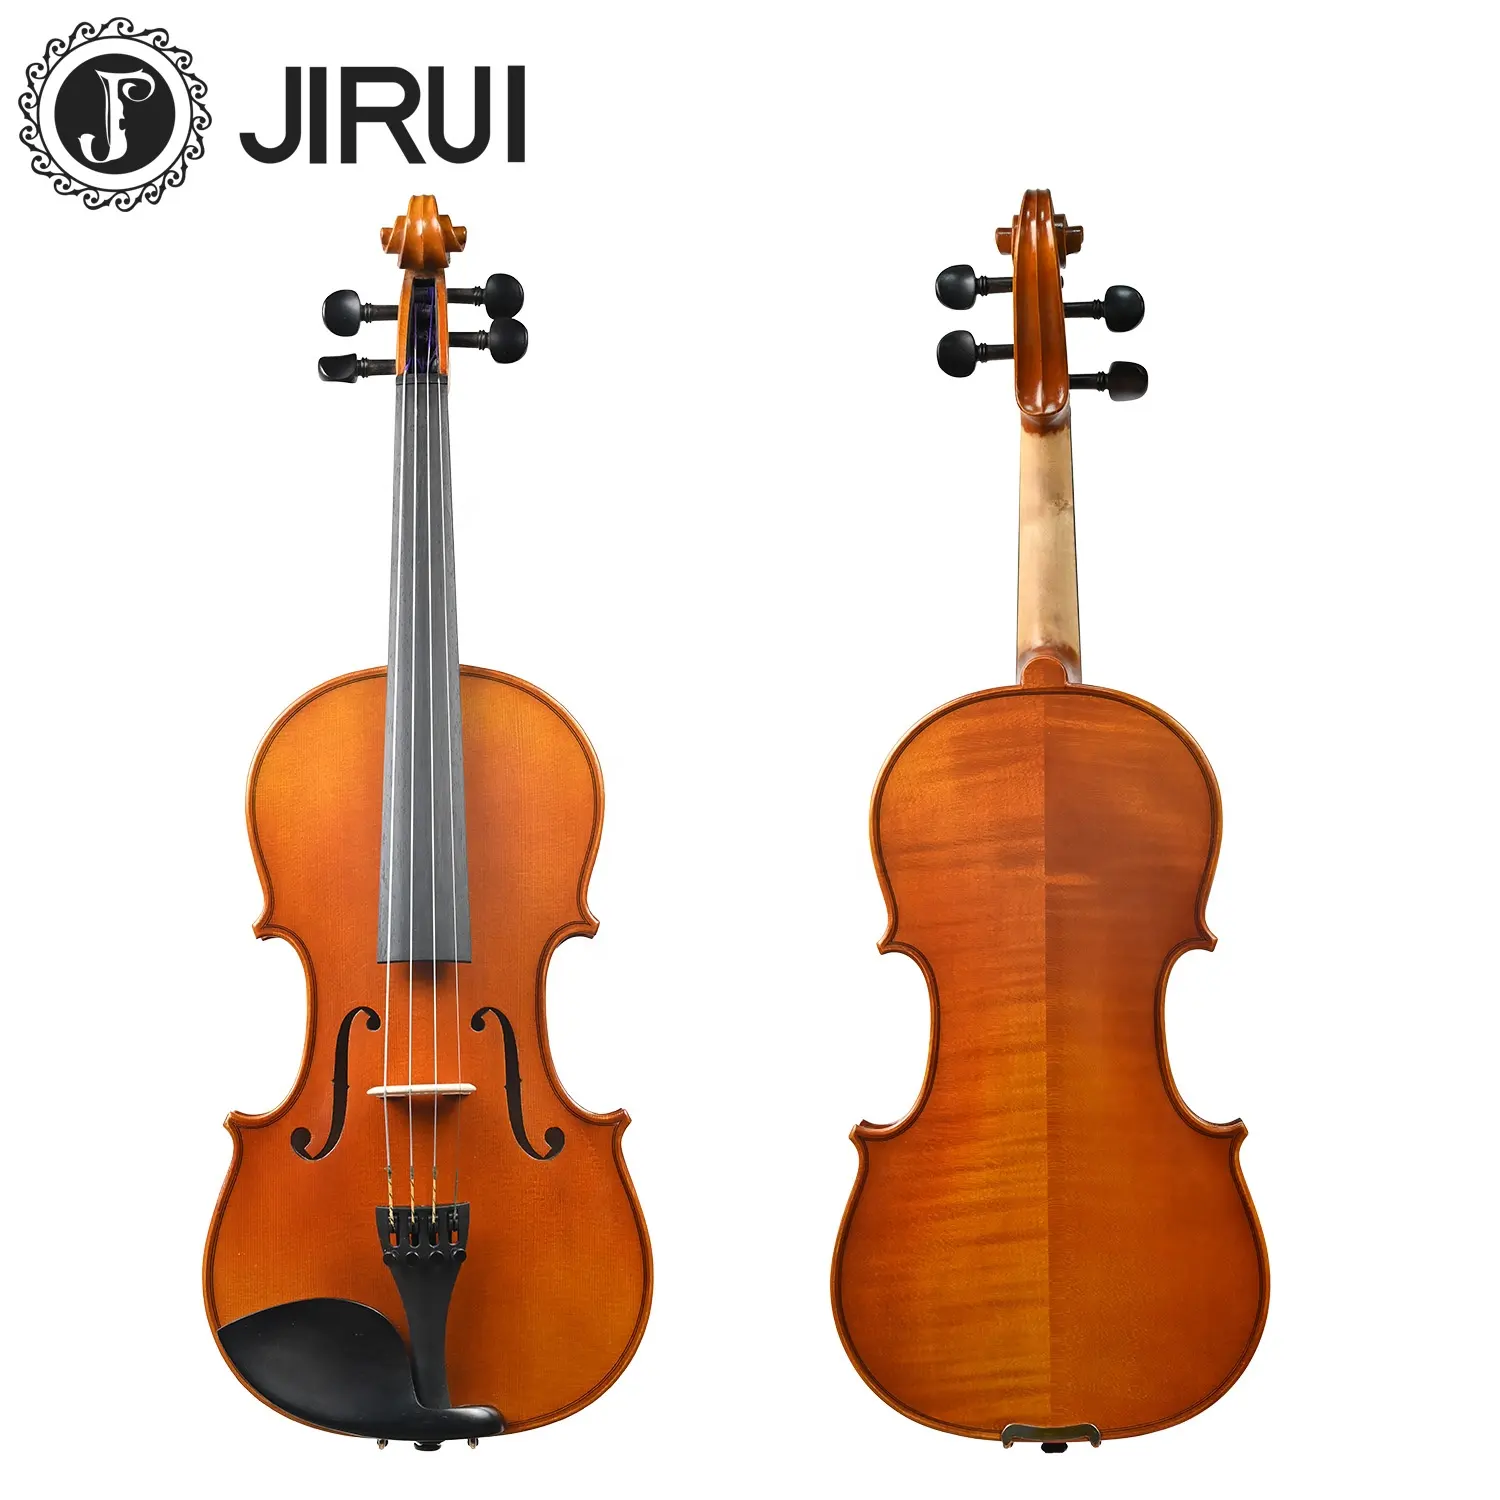 Violino profissional feito à mão de alta qualidade, violino avançado de bordo flamejado, 4/4 grau B, estilo antigo dourado, ideal para venda